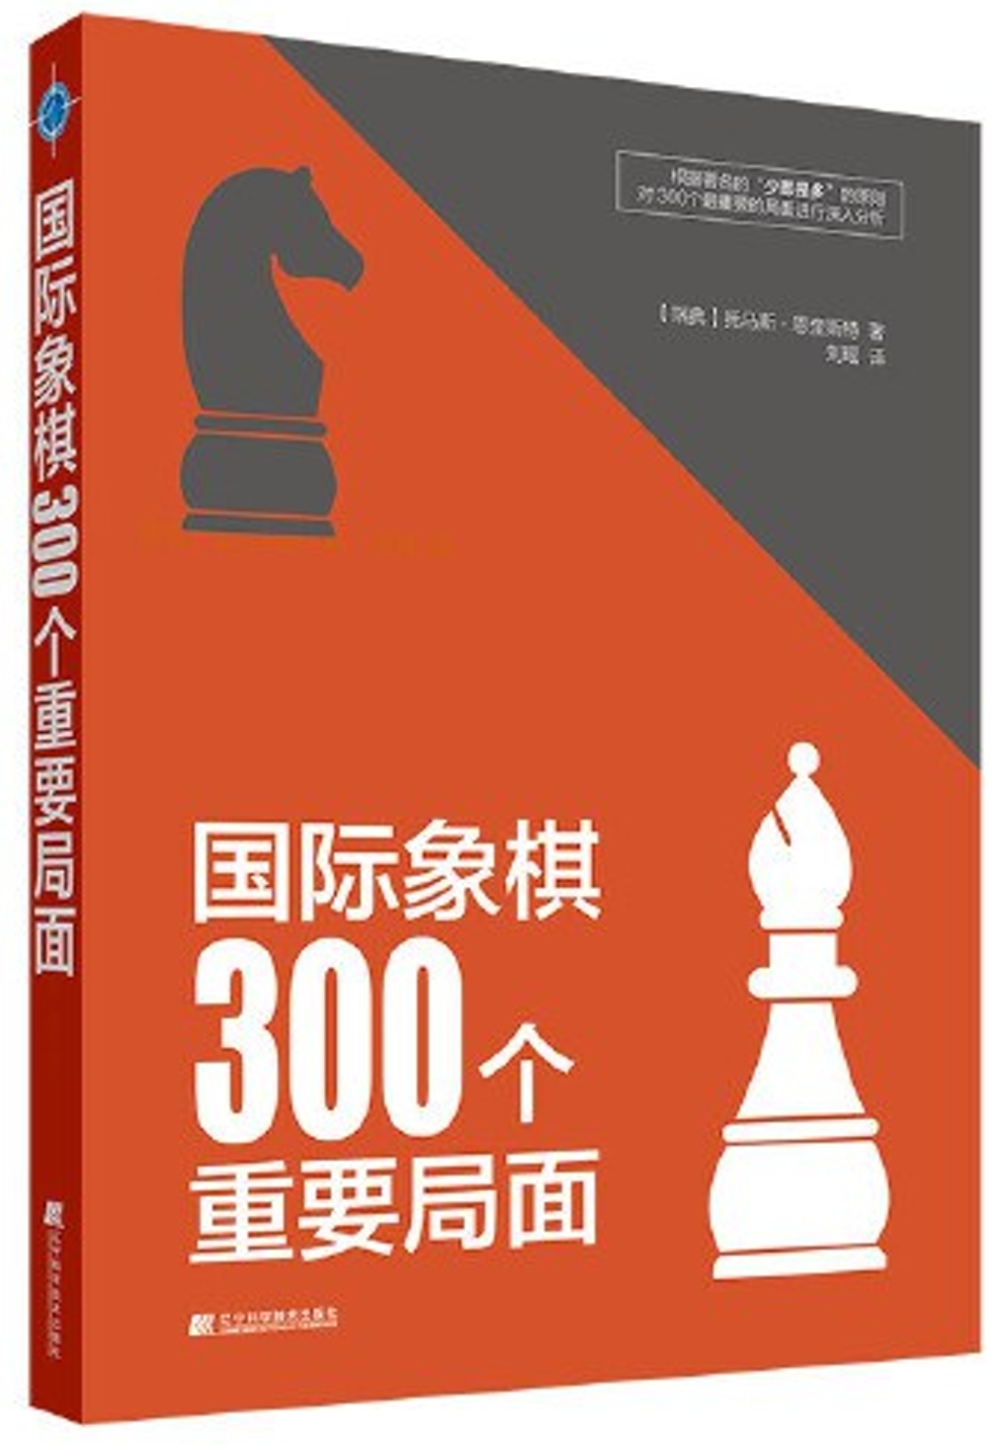 國際象棋300個重要局面